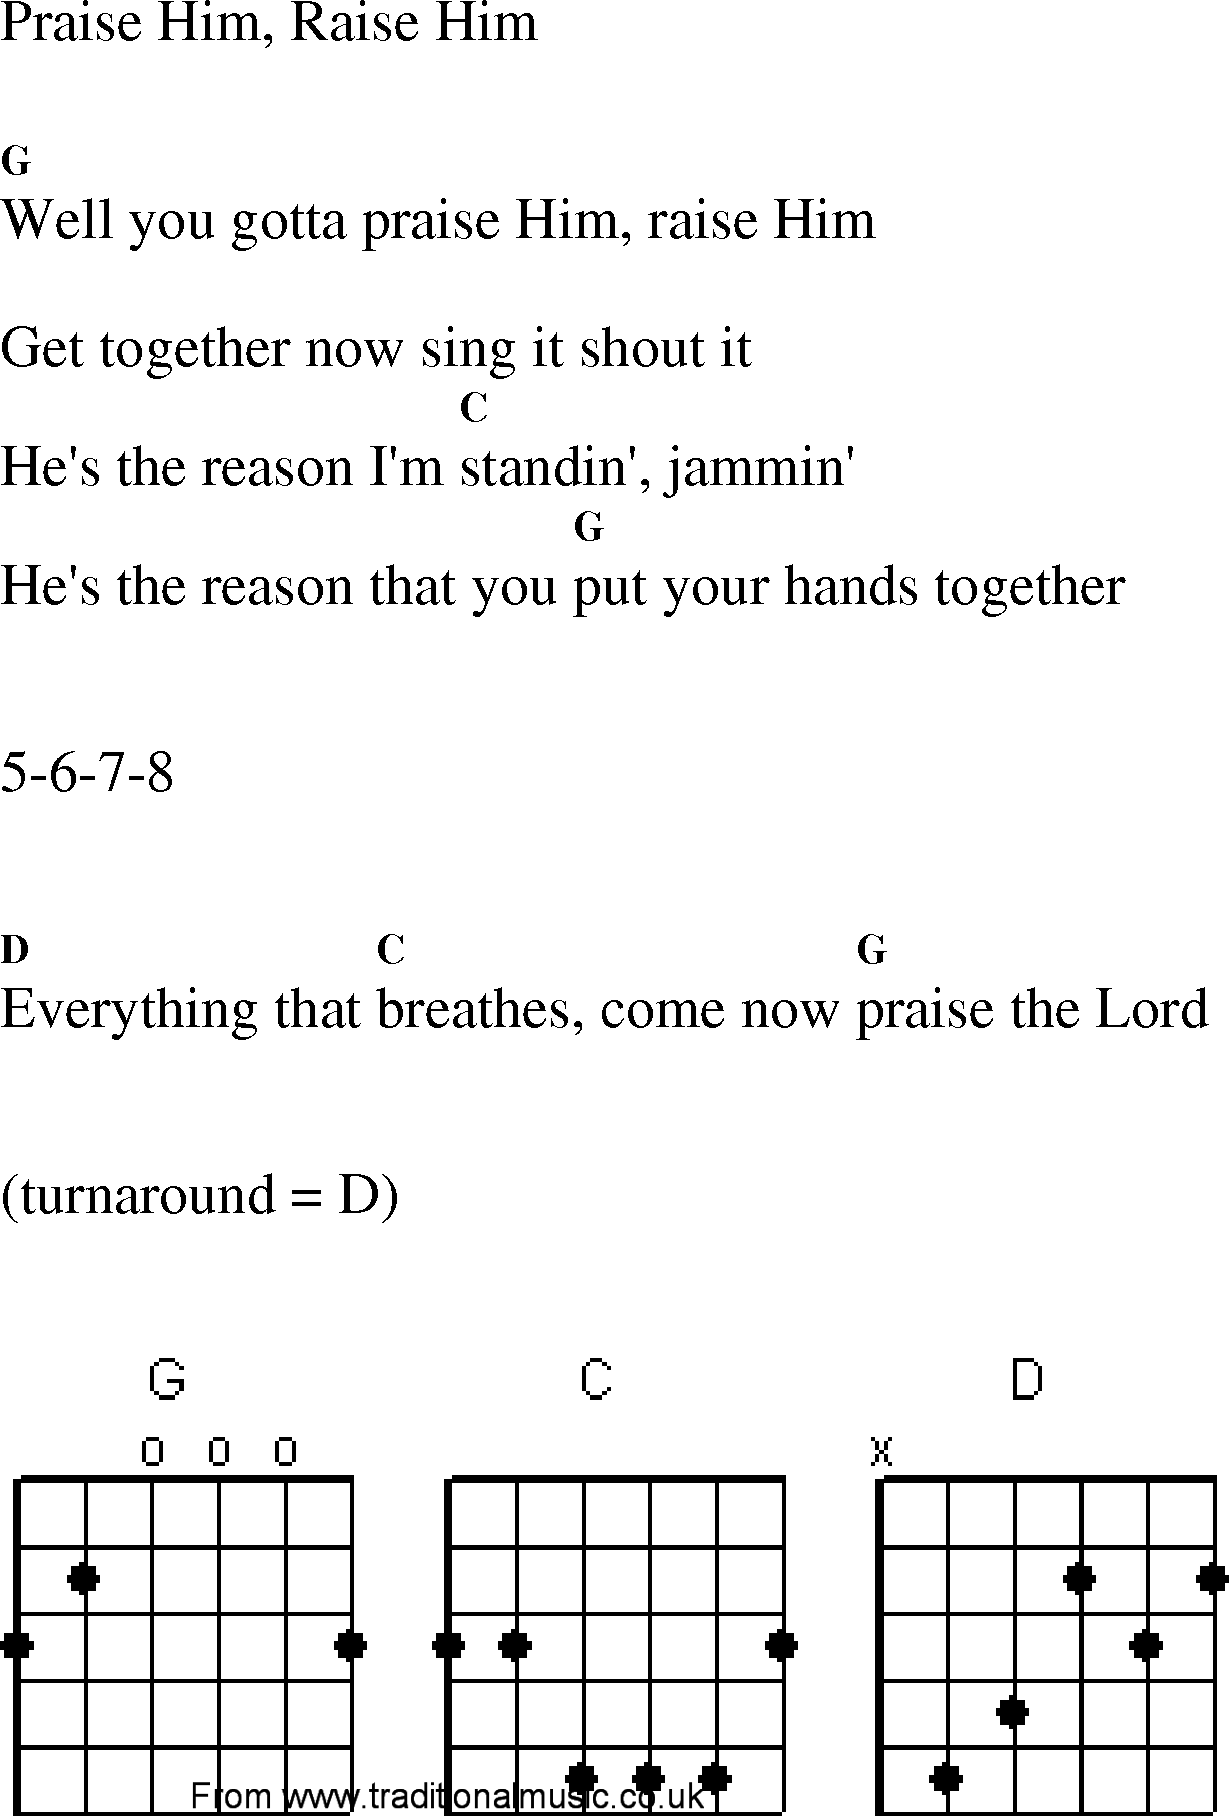 Gospel Song: praise_him_raise_him, lyrics and chords.